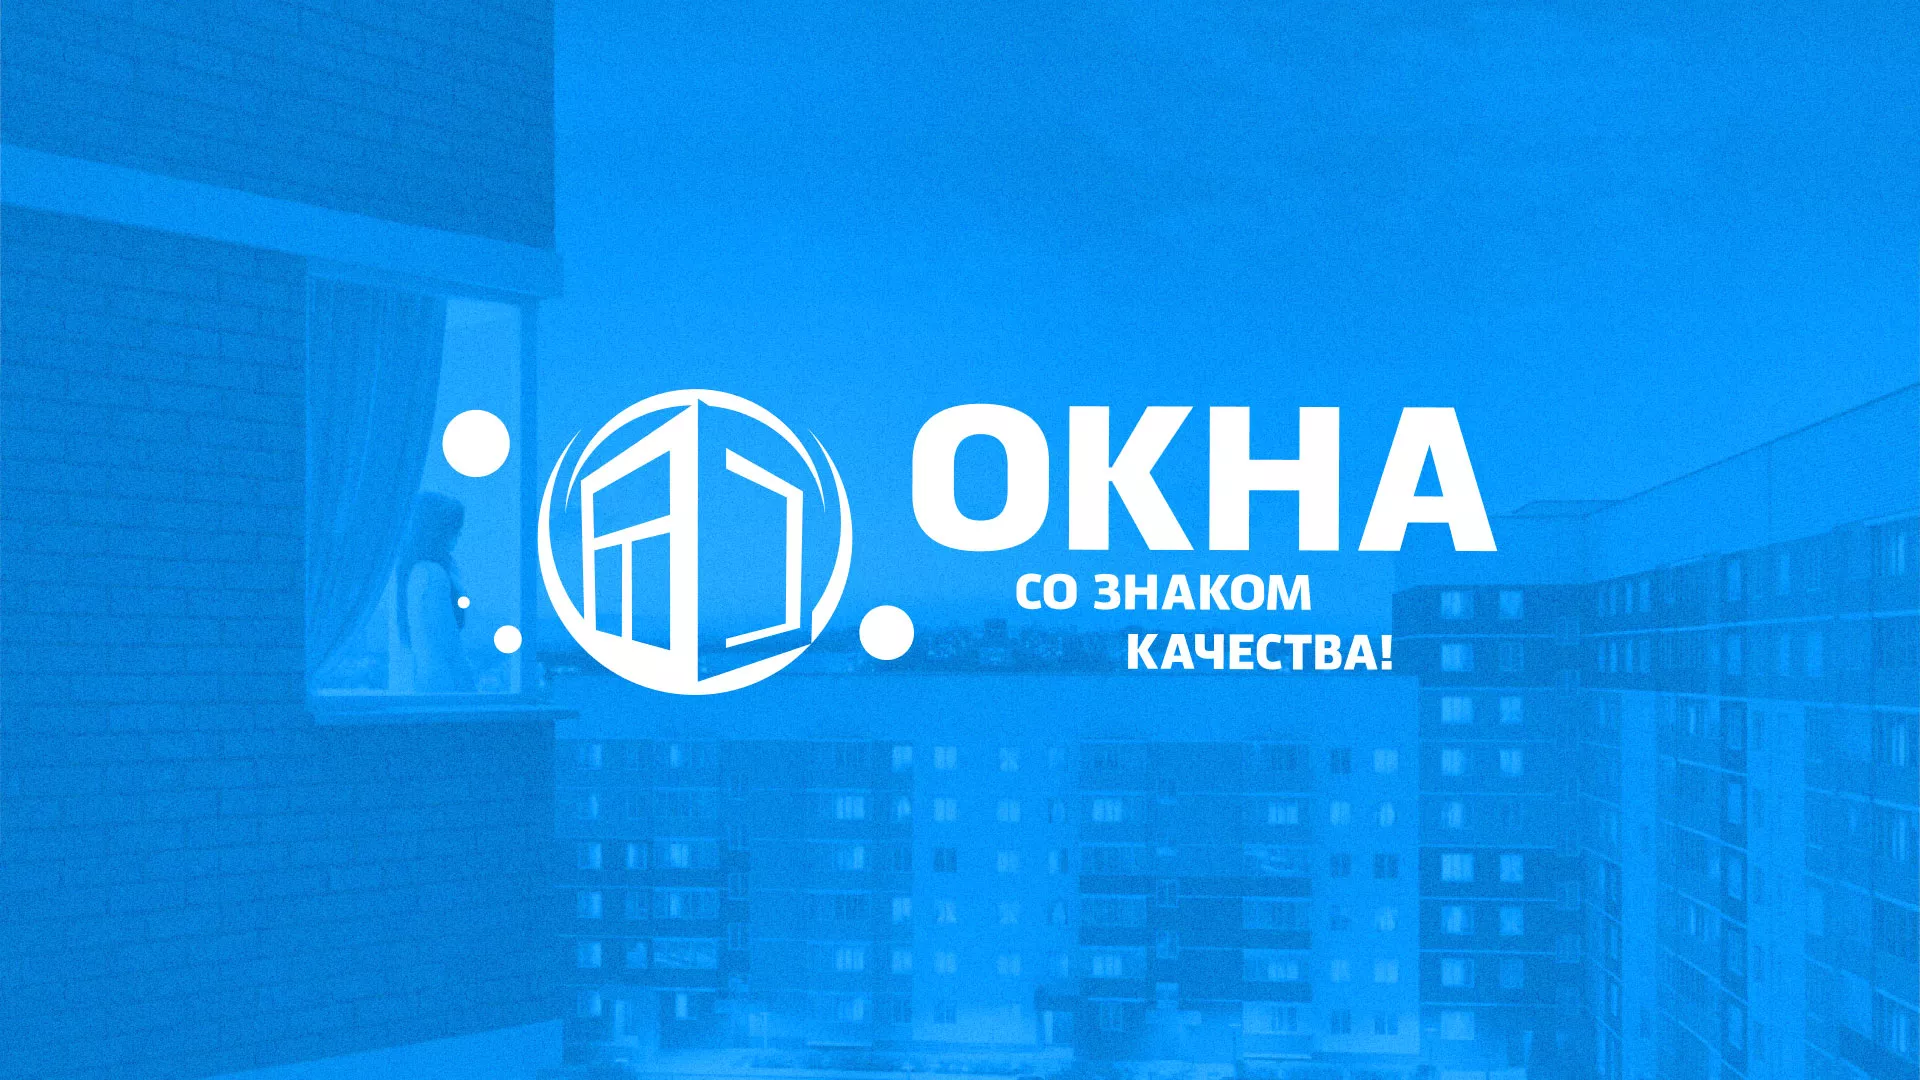 Создание сайта компании «Окна ВИДО» в Хабаровске